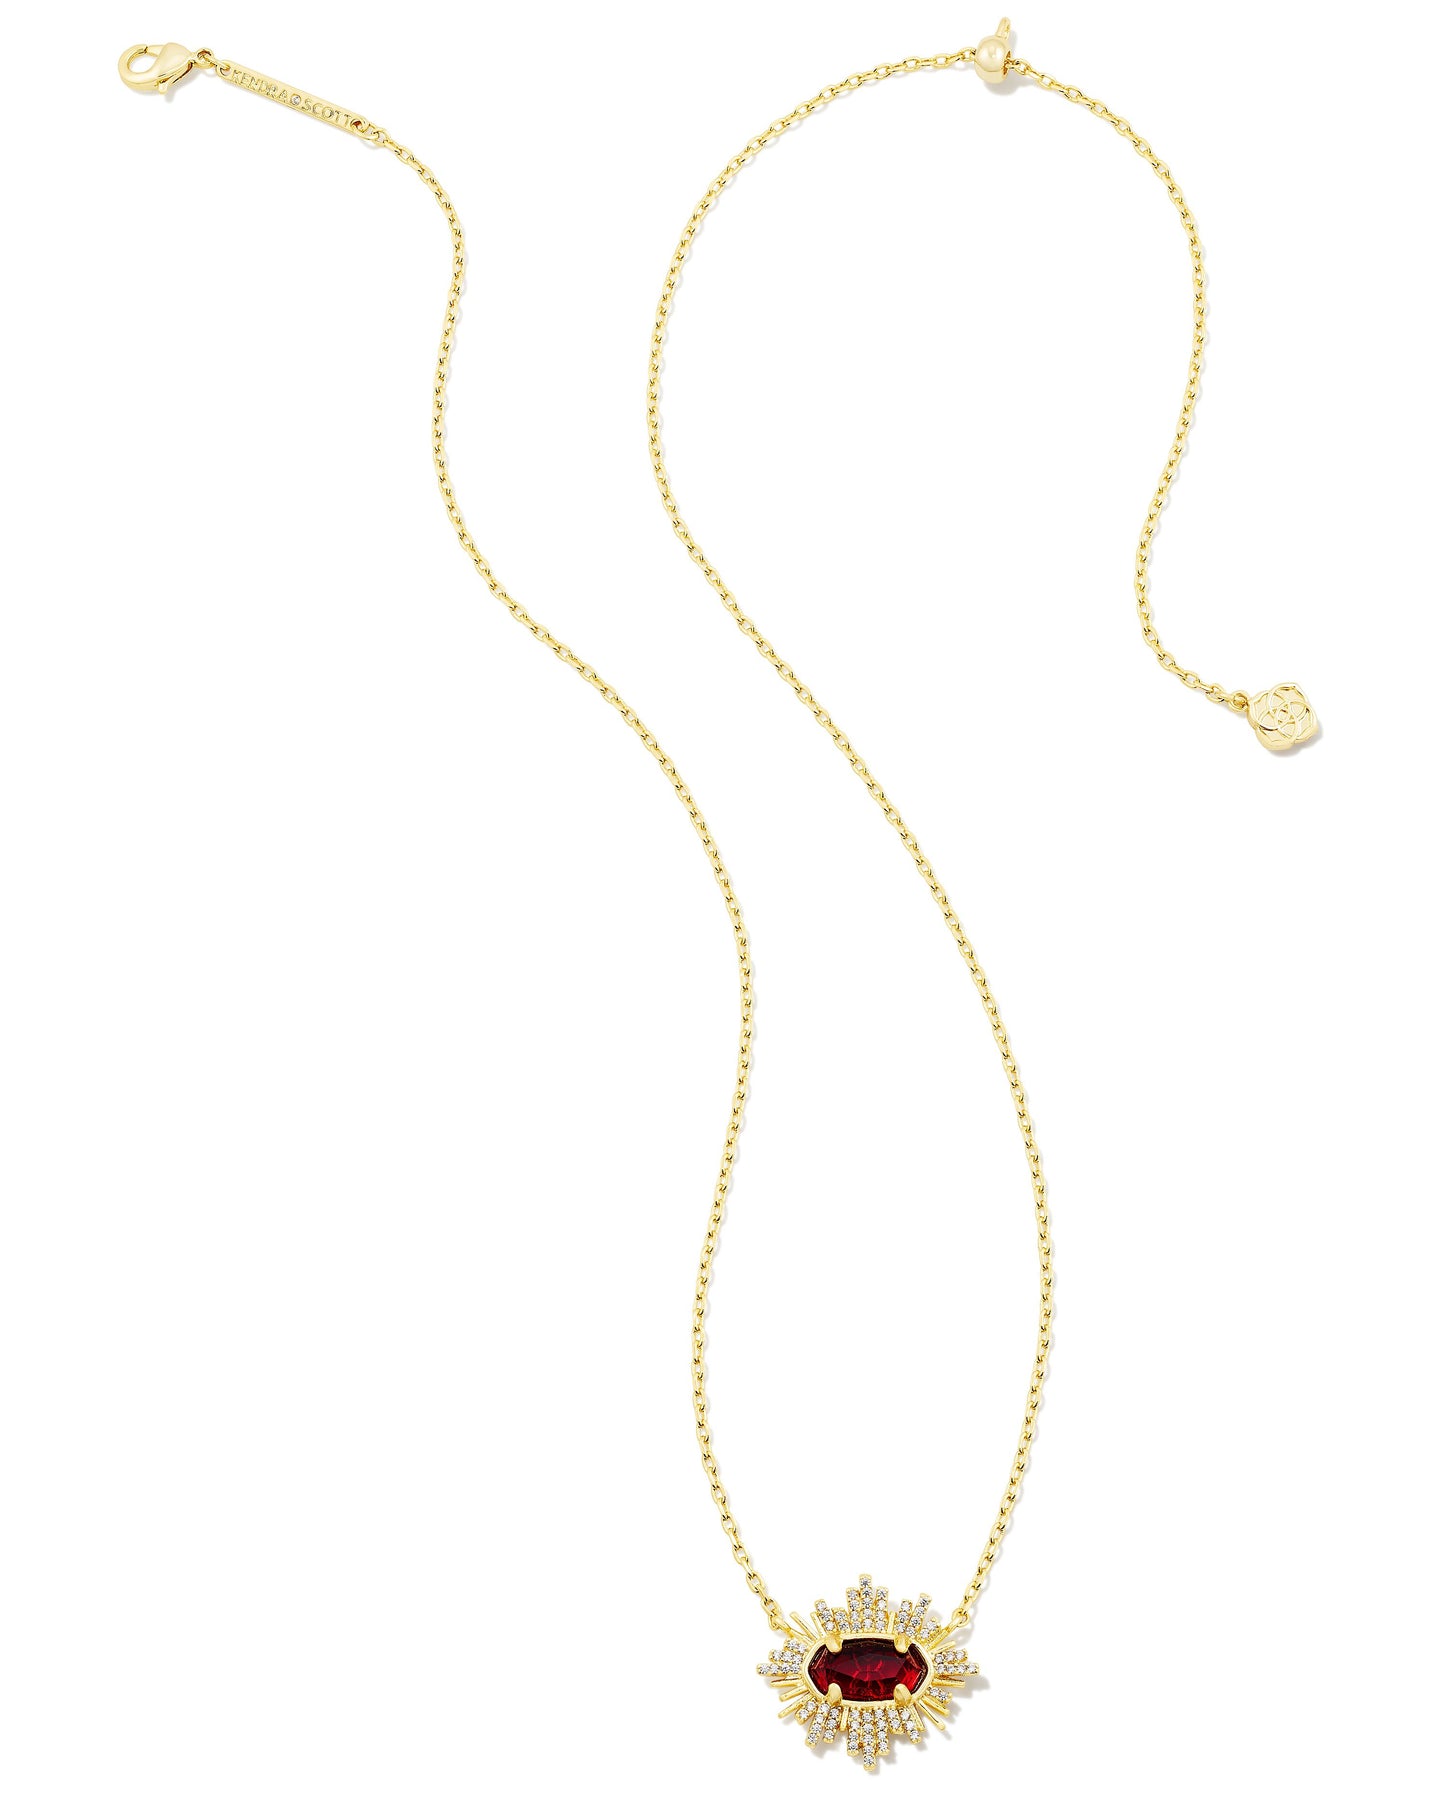 Grayson Sunburst Frame Necklace | Gold & Red Glass